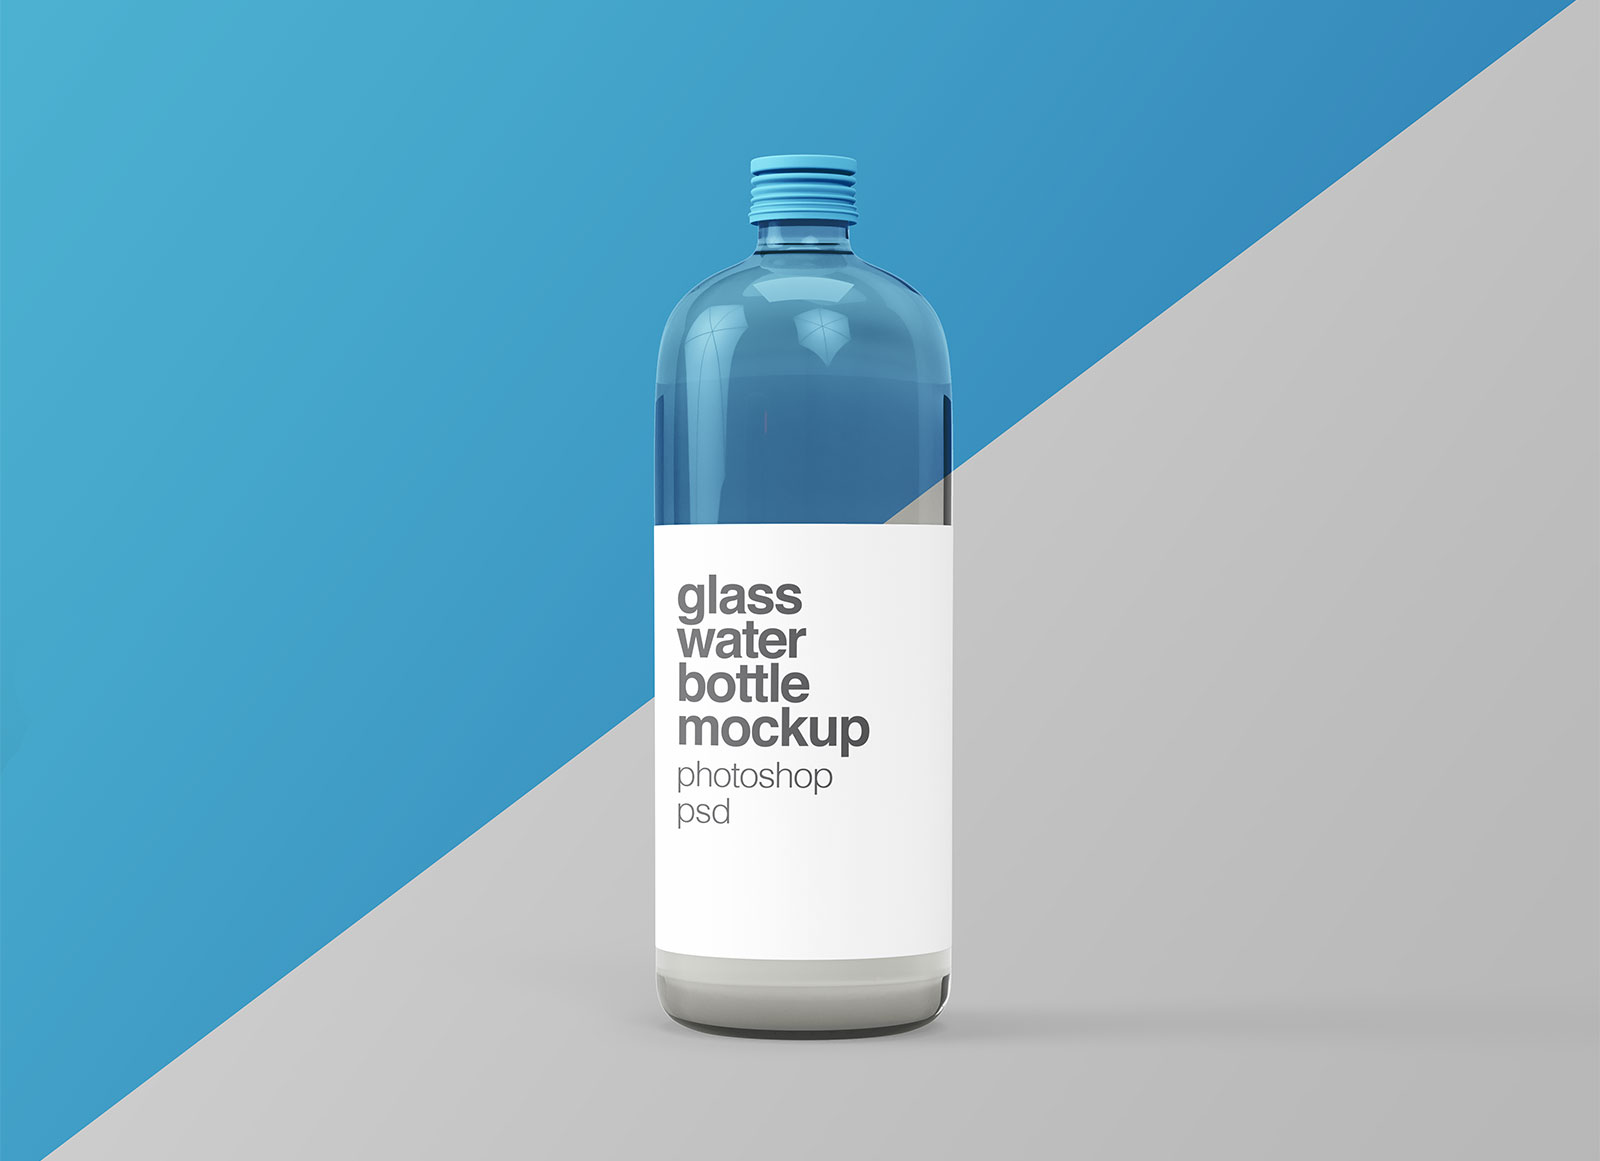 Free-Glass-Water-Bottle-Mockup-PSD